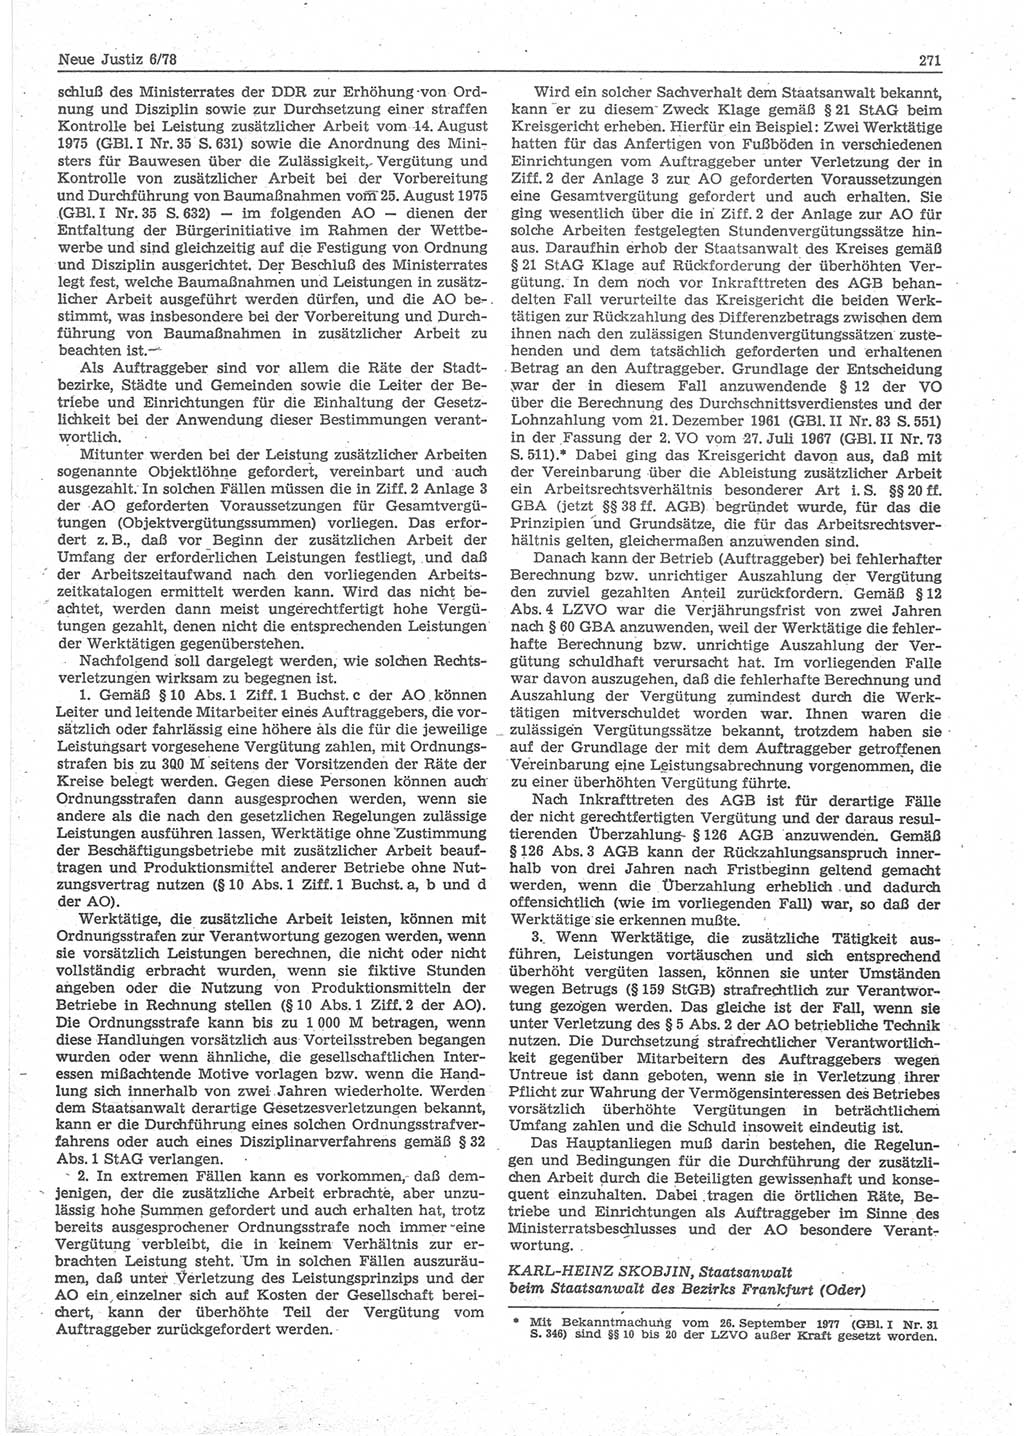 Neue Justiz (NJ), Zeitschrift für sozialistisches Recht und Gesetzlichkeit [Deutsche Demokratische Republik (DDR)], 32. Jahrgang 1978, Seite 271 (NJ DDR 1978, S. 271)